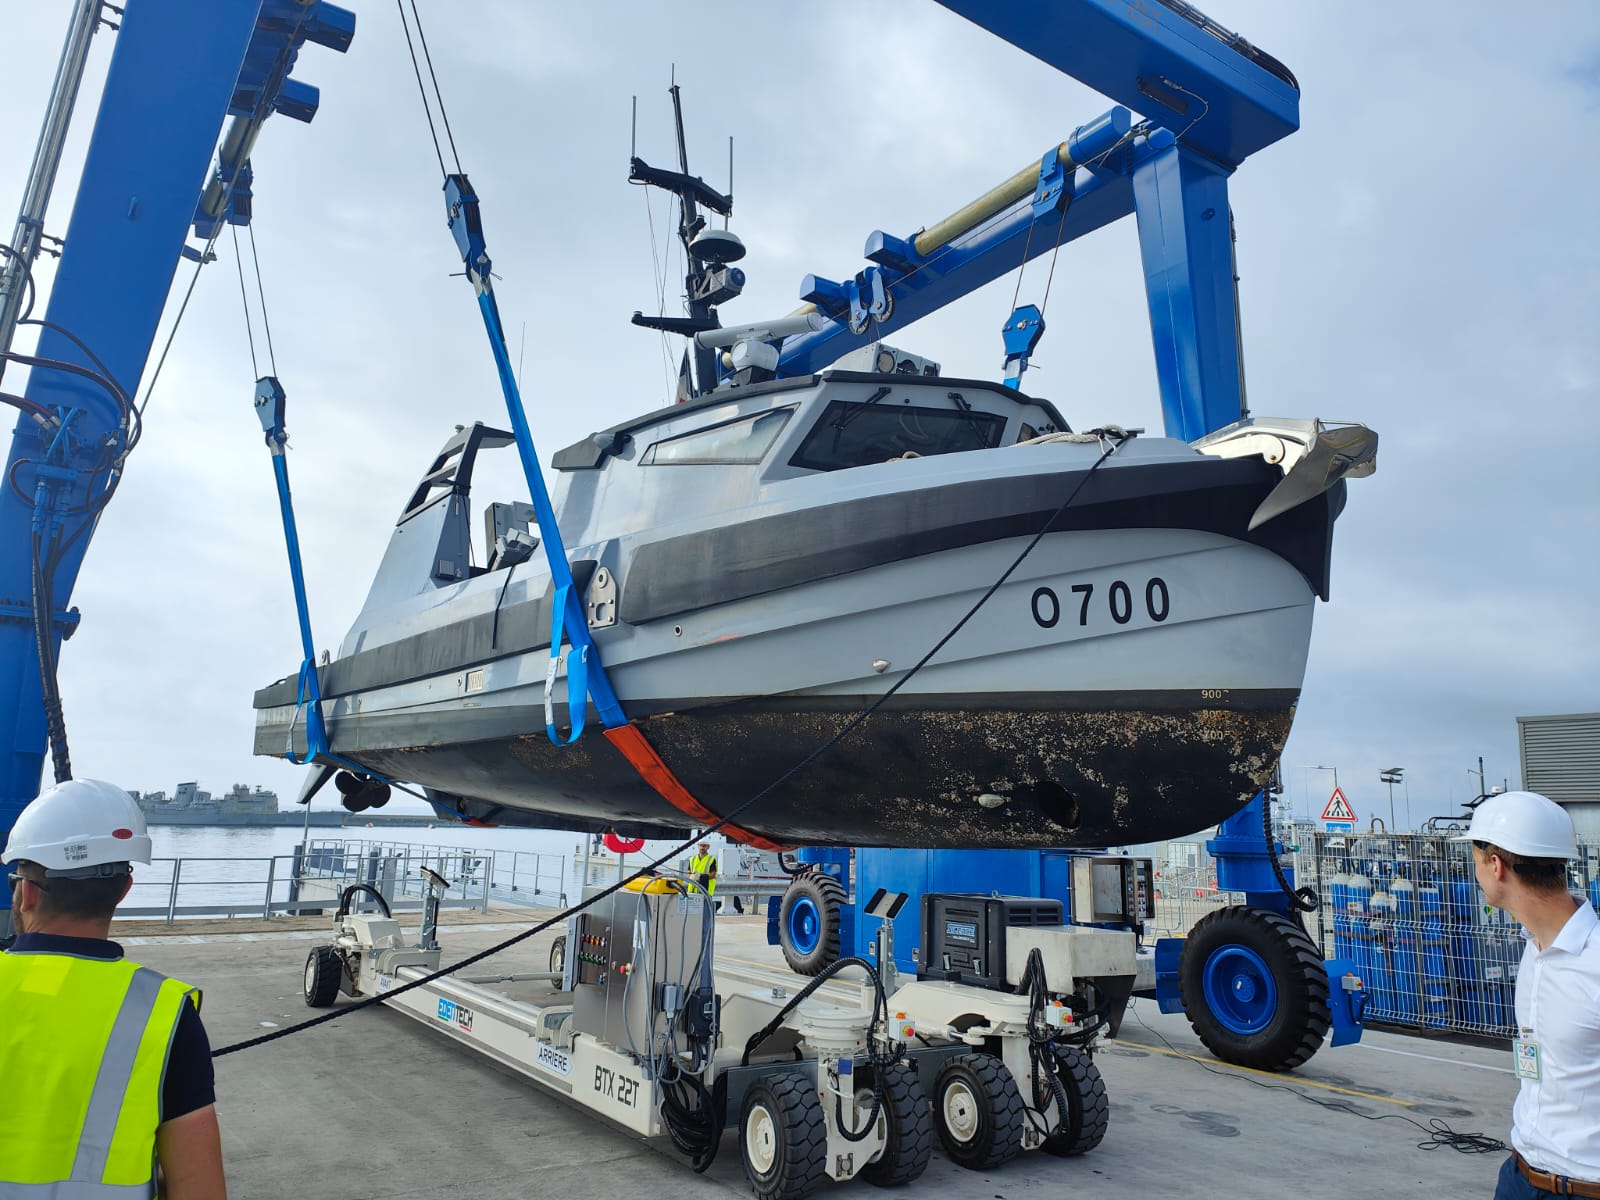  La Flottille de lutte contre les mines réceptionne l’élévateur à bateaux dédié aux drones de surface du SLAMF